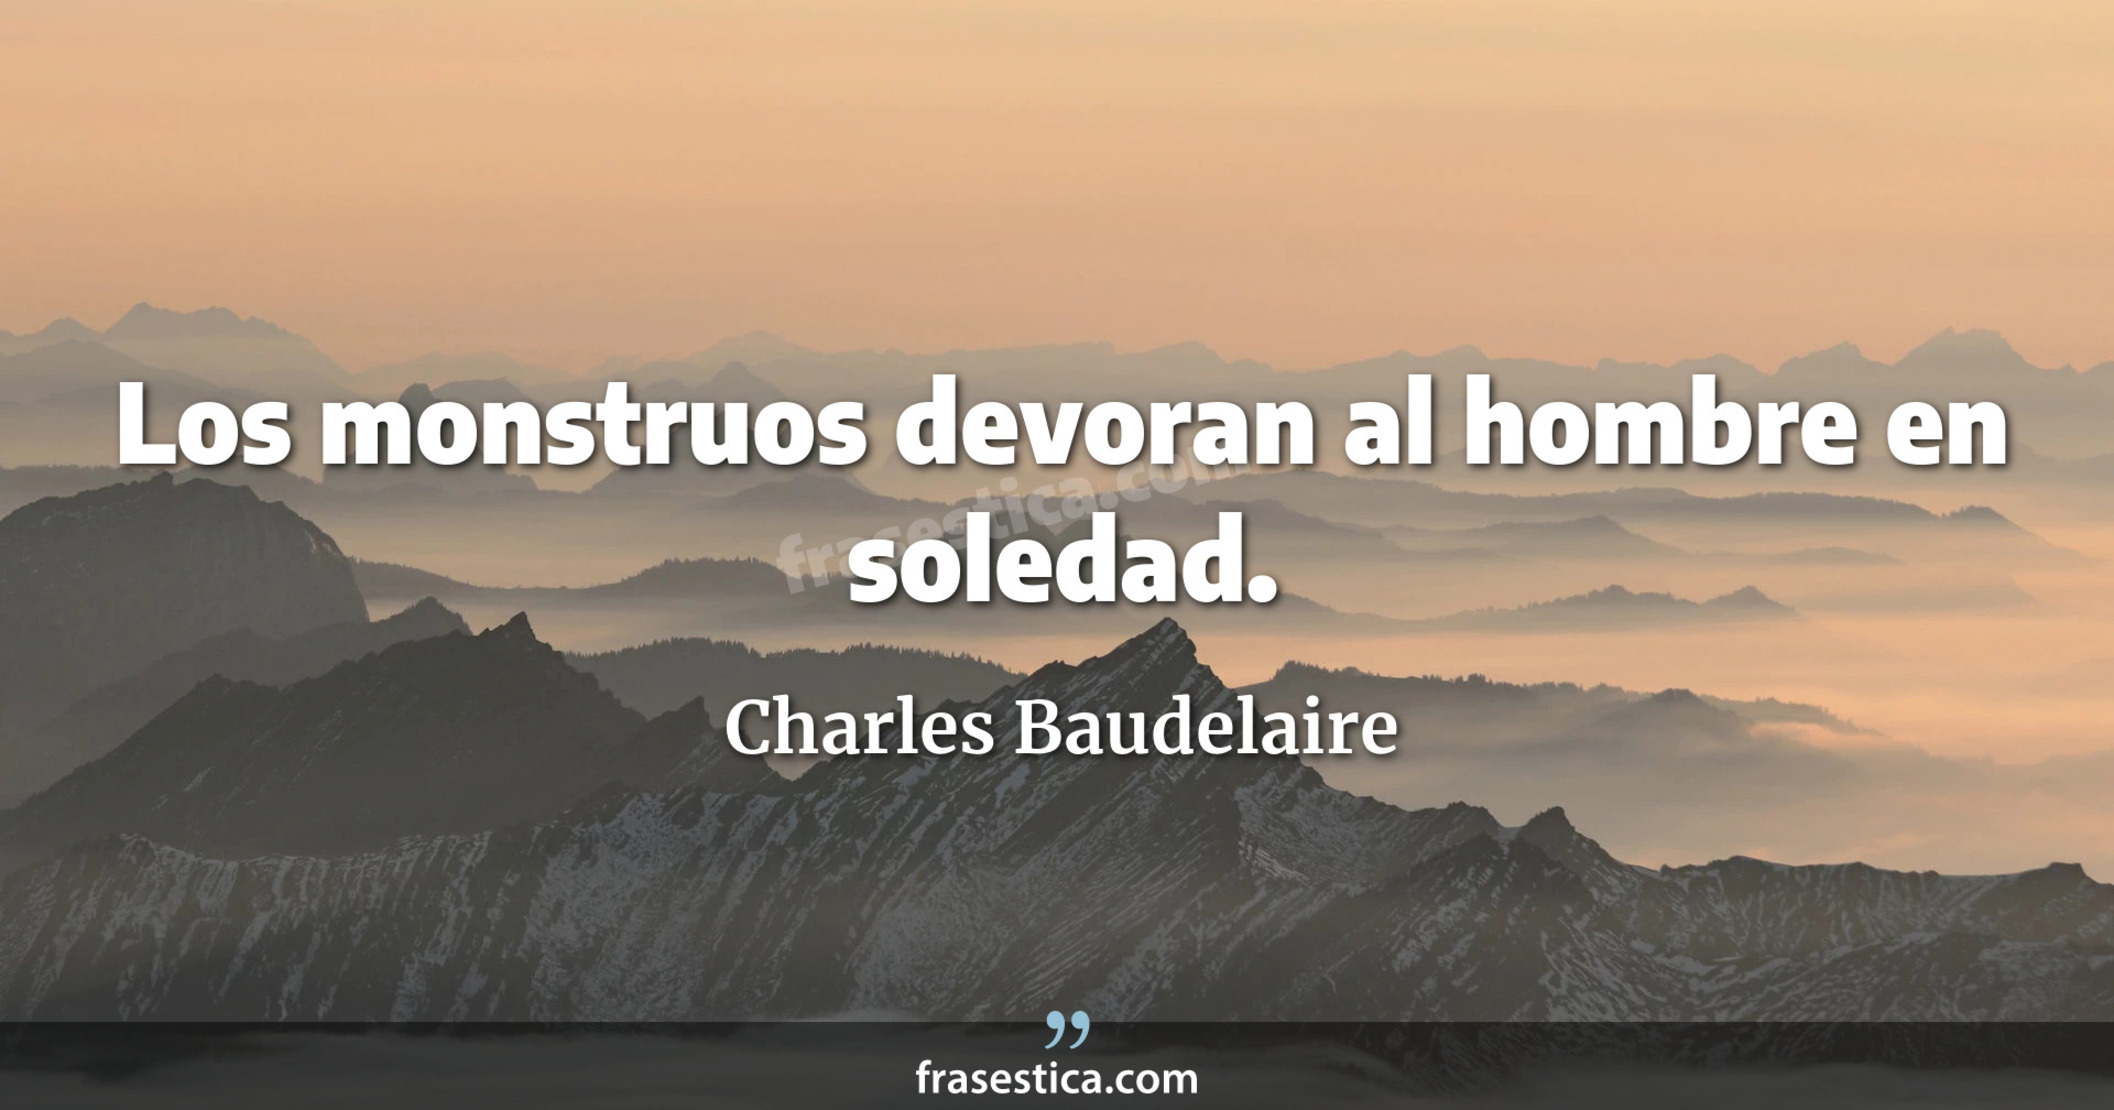 Los monstruos devoran al hombre en soledad. - Charles Baudelaire